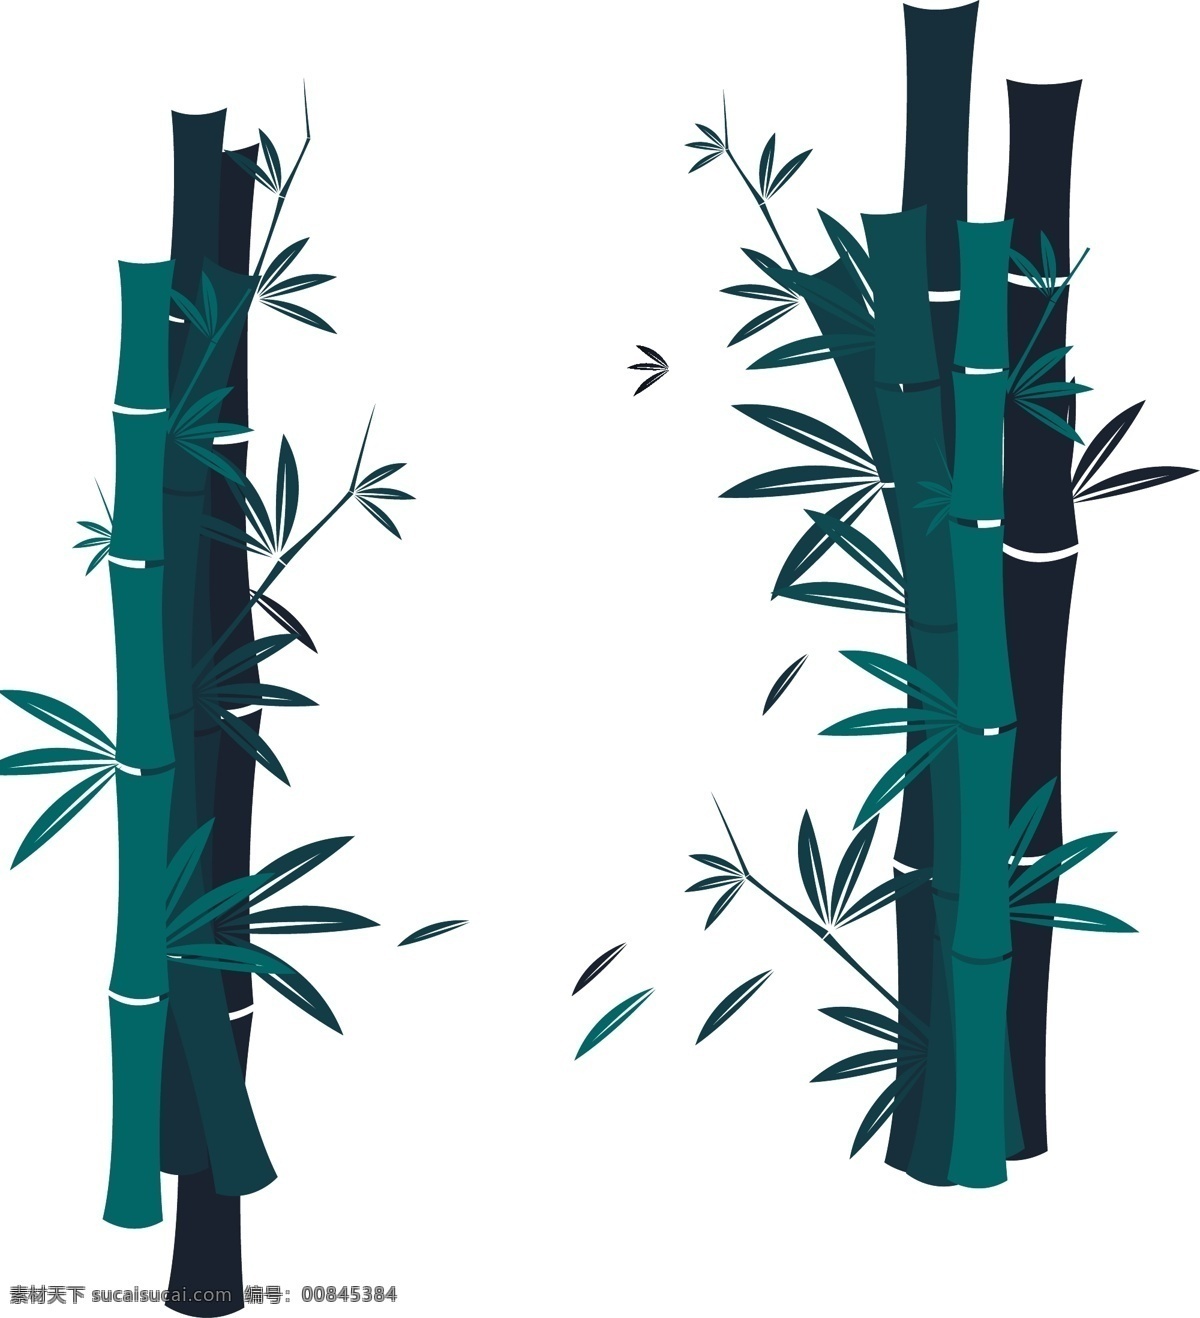 矢量竹子 卡通竹子 手绘竹子 竹子插画 竹子剪影 绿色竹子 竹叶 植物树木 生物世界 树木树叶